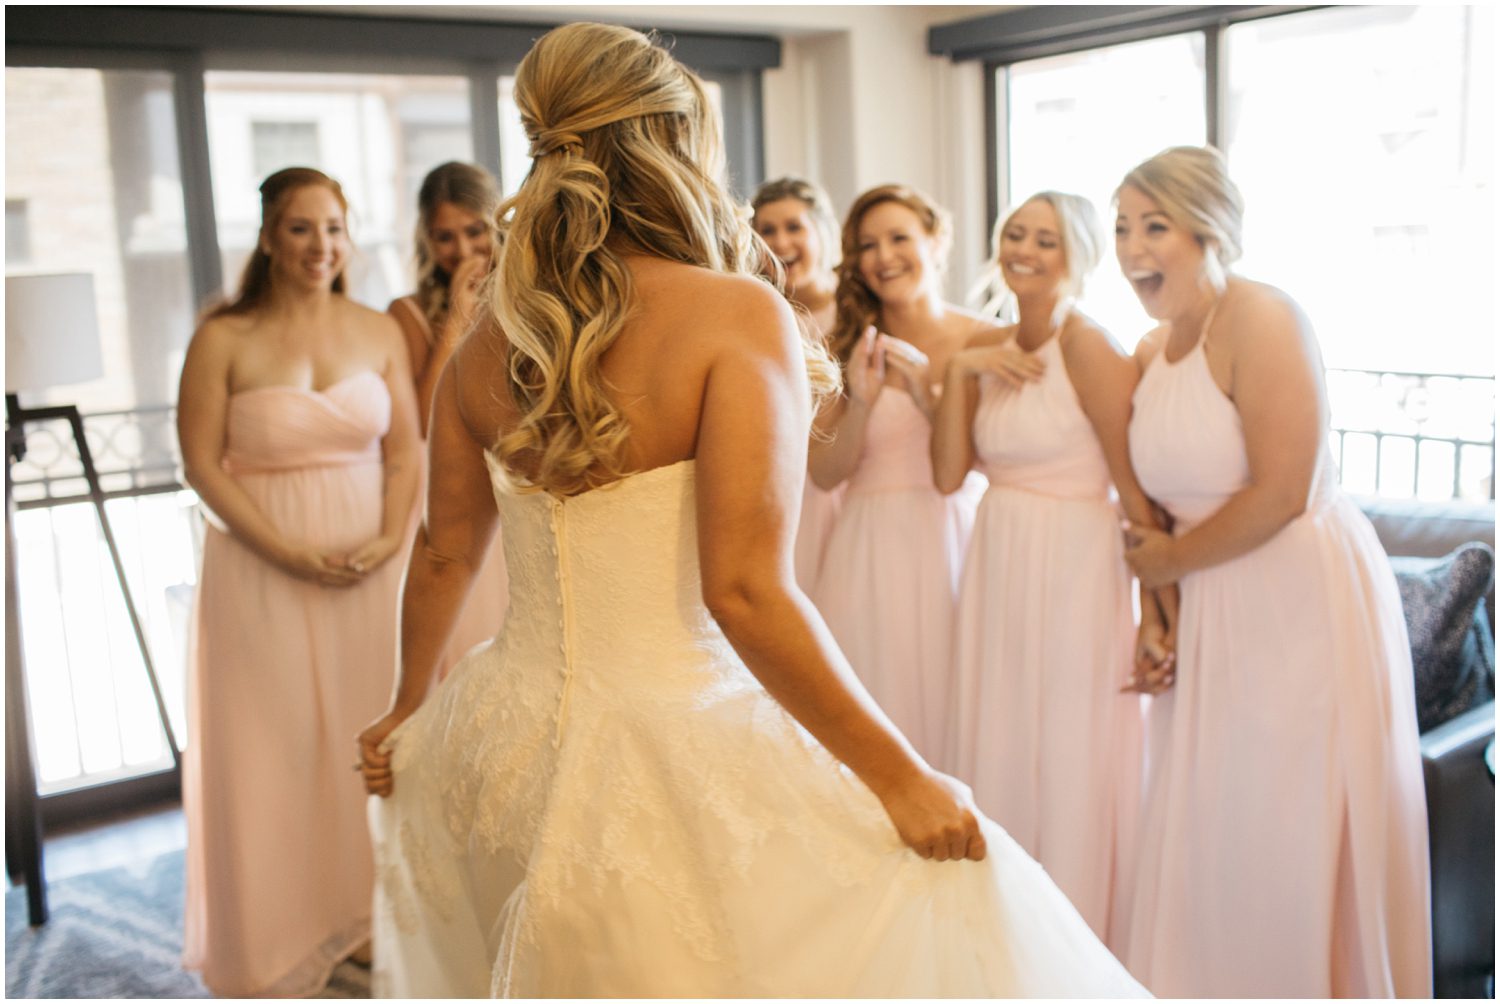 Bride reveal to bridesmaids, Wedding getting ready photos, Vail Colorado Wedding Photos, Donovan Pavilion Vail Colorado Wedding Photos